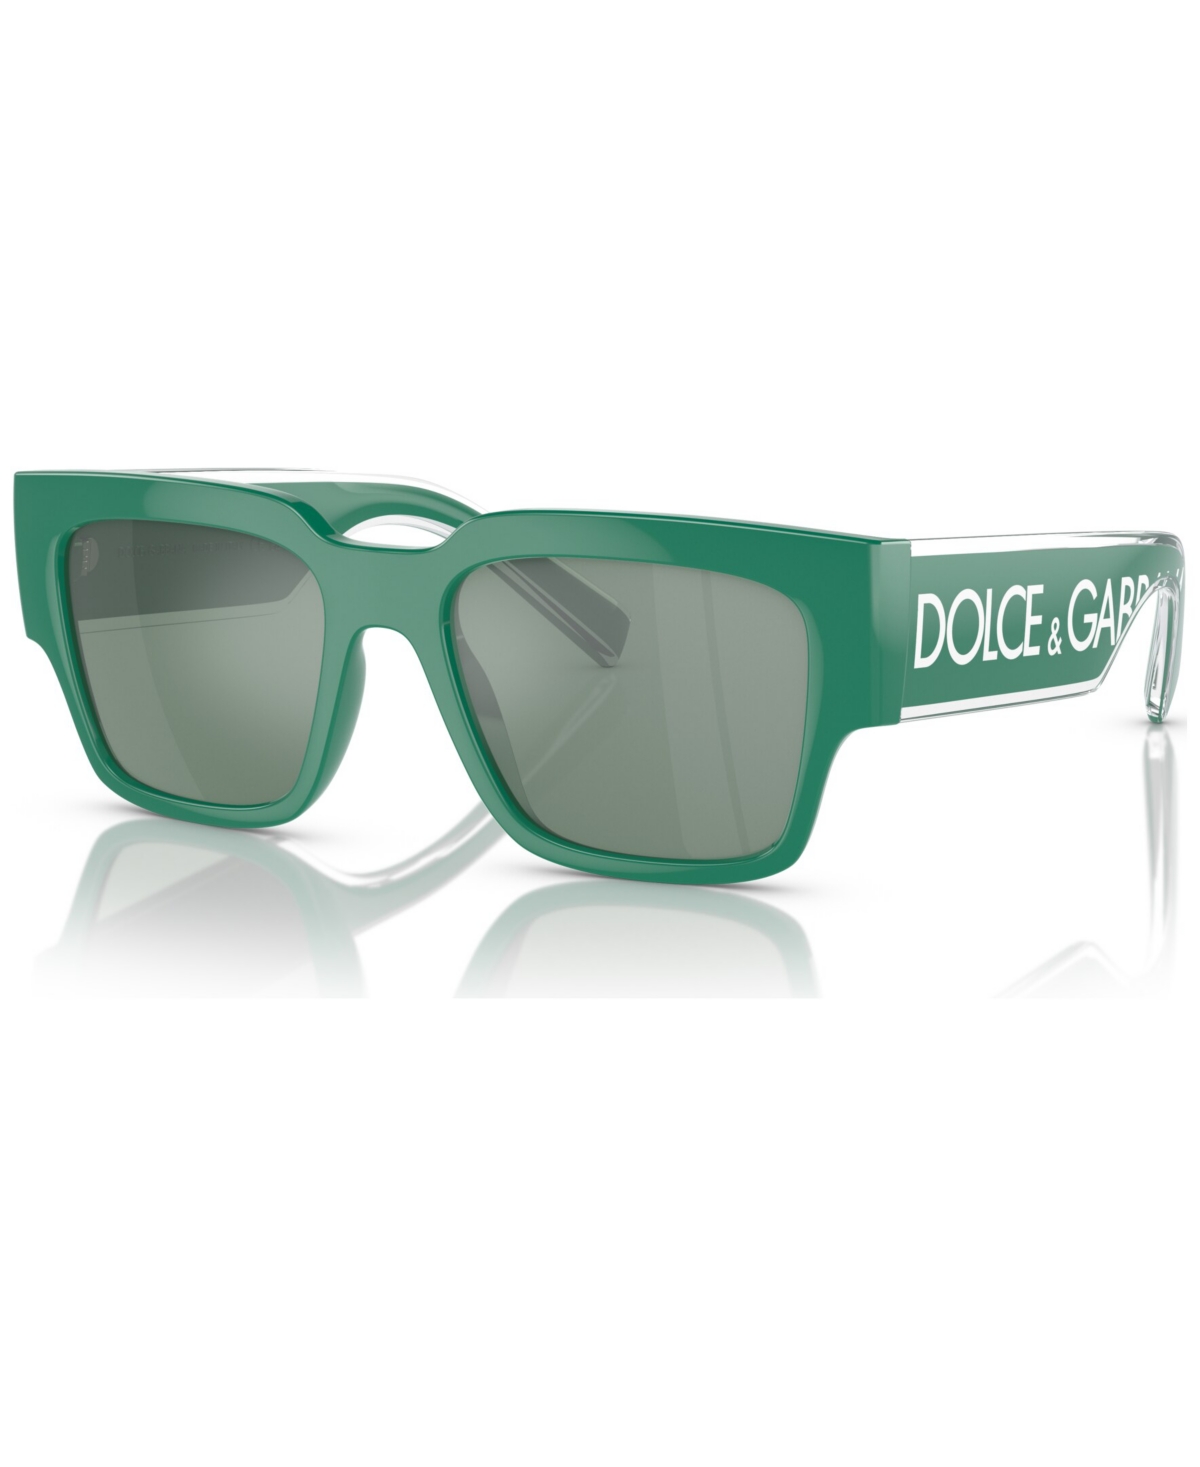 Dolce & Gabbana Dolce&gabbana Man Sunglasses Dg6184 In Petrol Green Mirror Silver